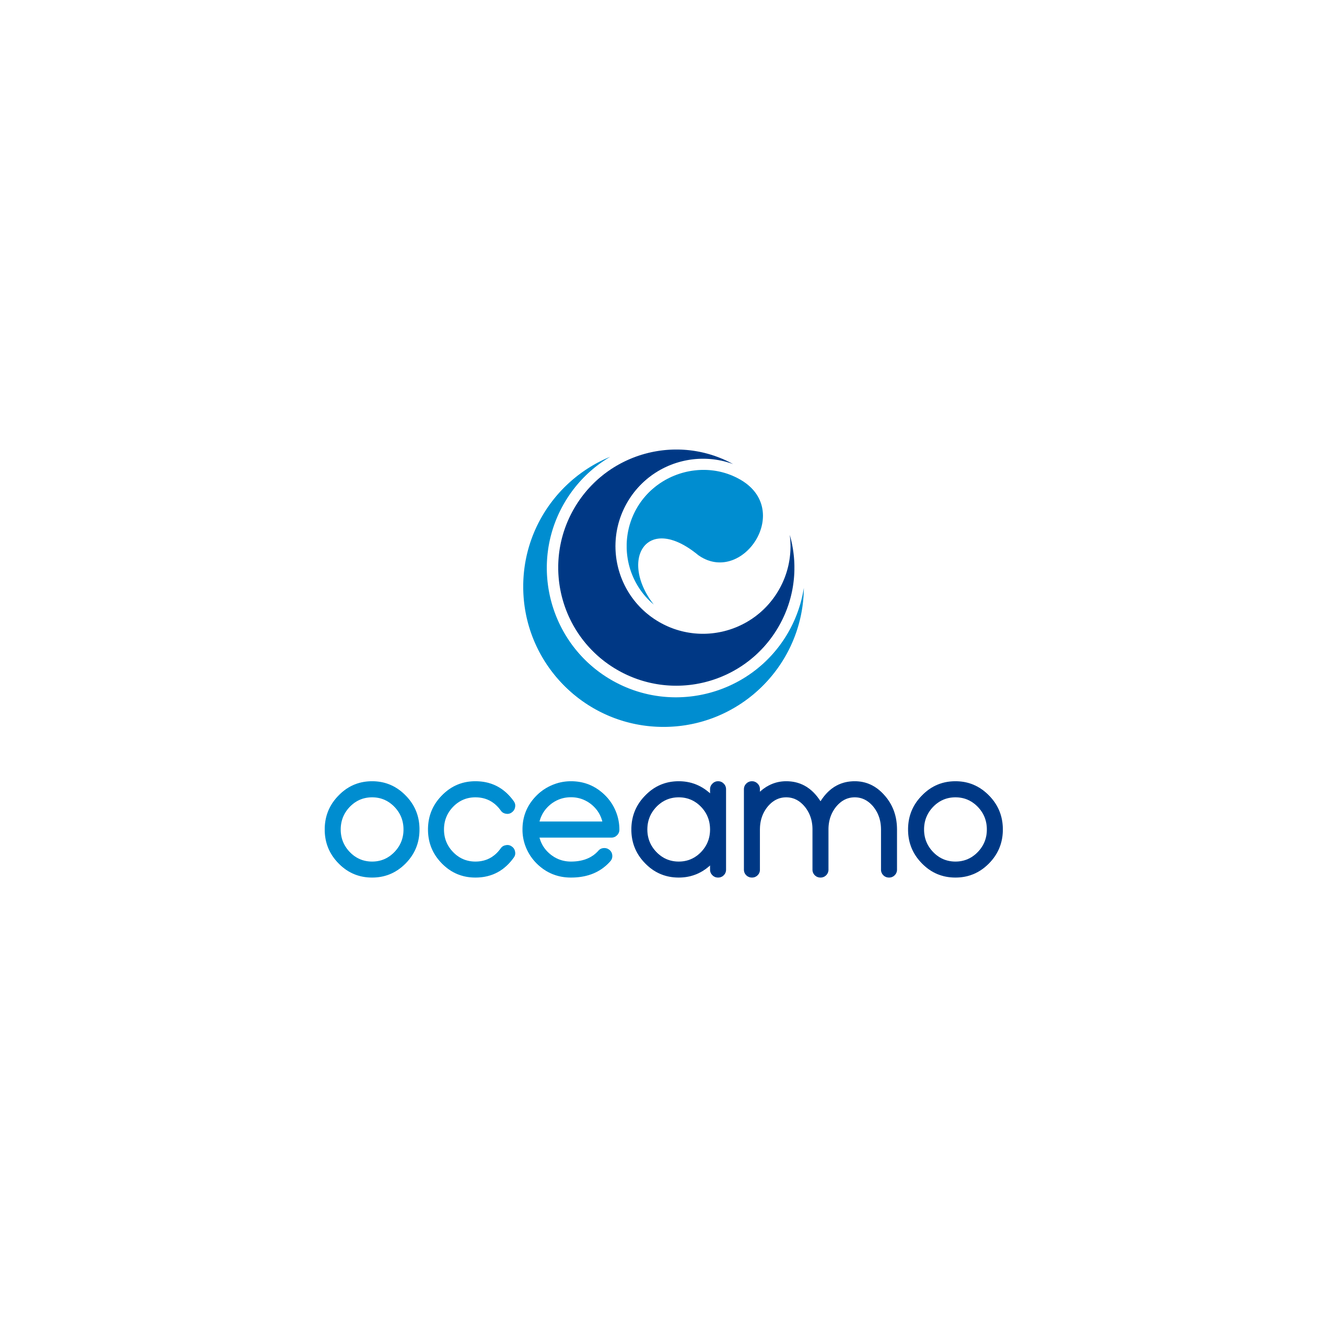 www.oceamo.com